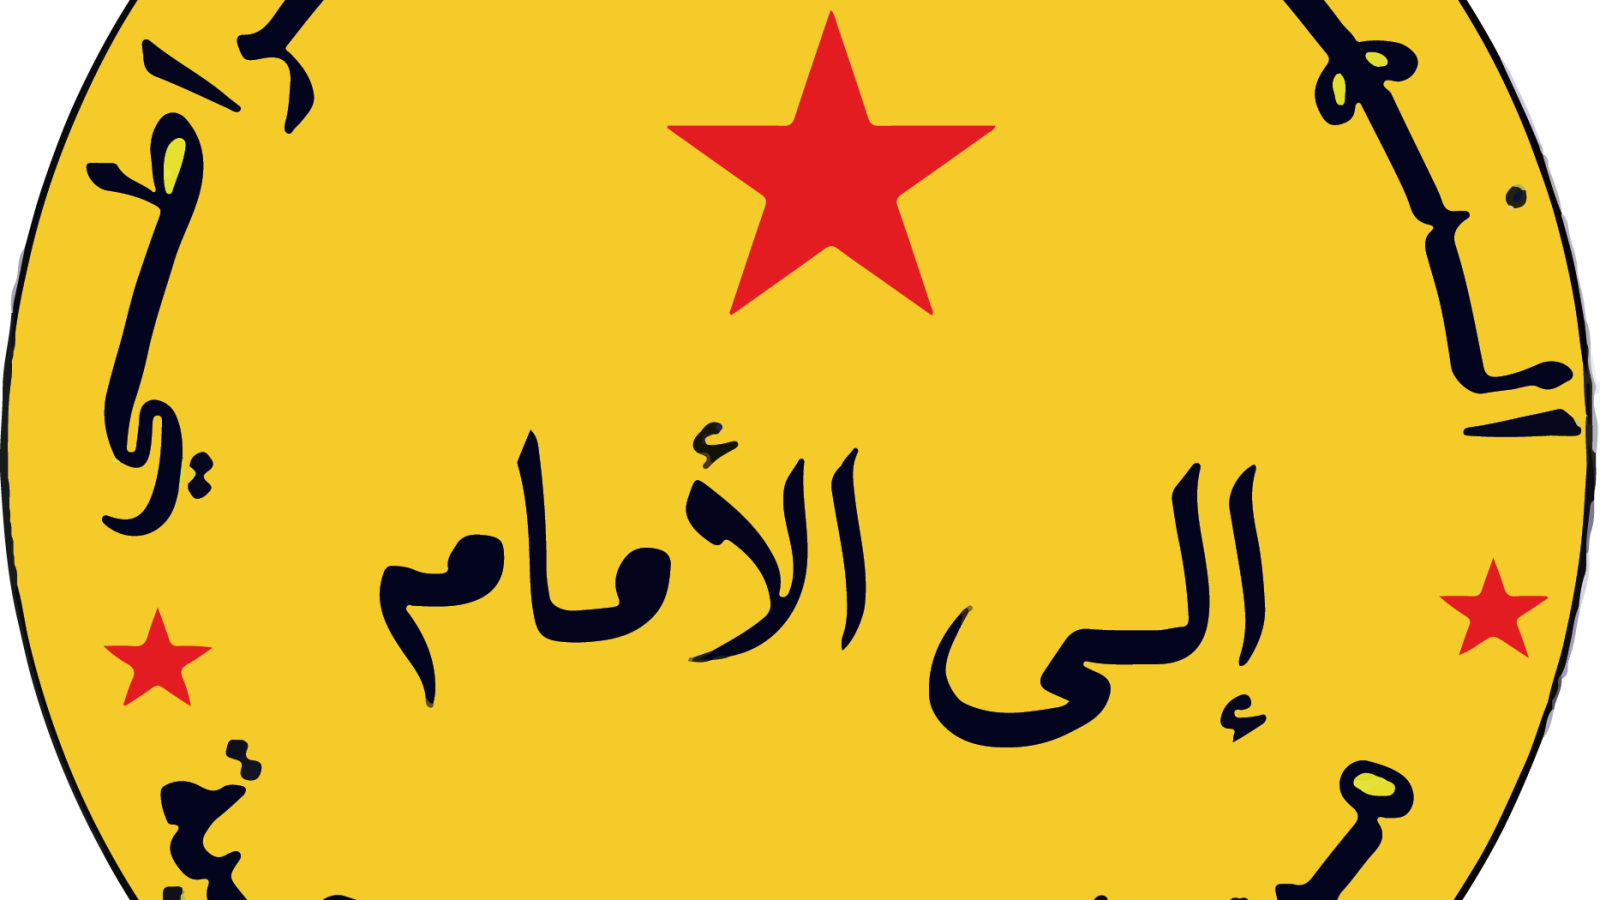 Demokratisk Kurs – Democratic Way Marokko